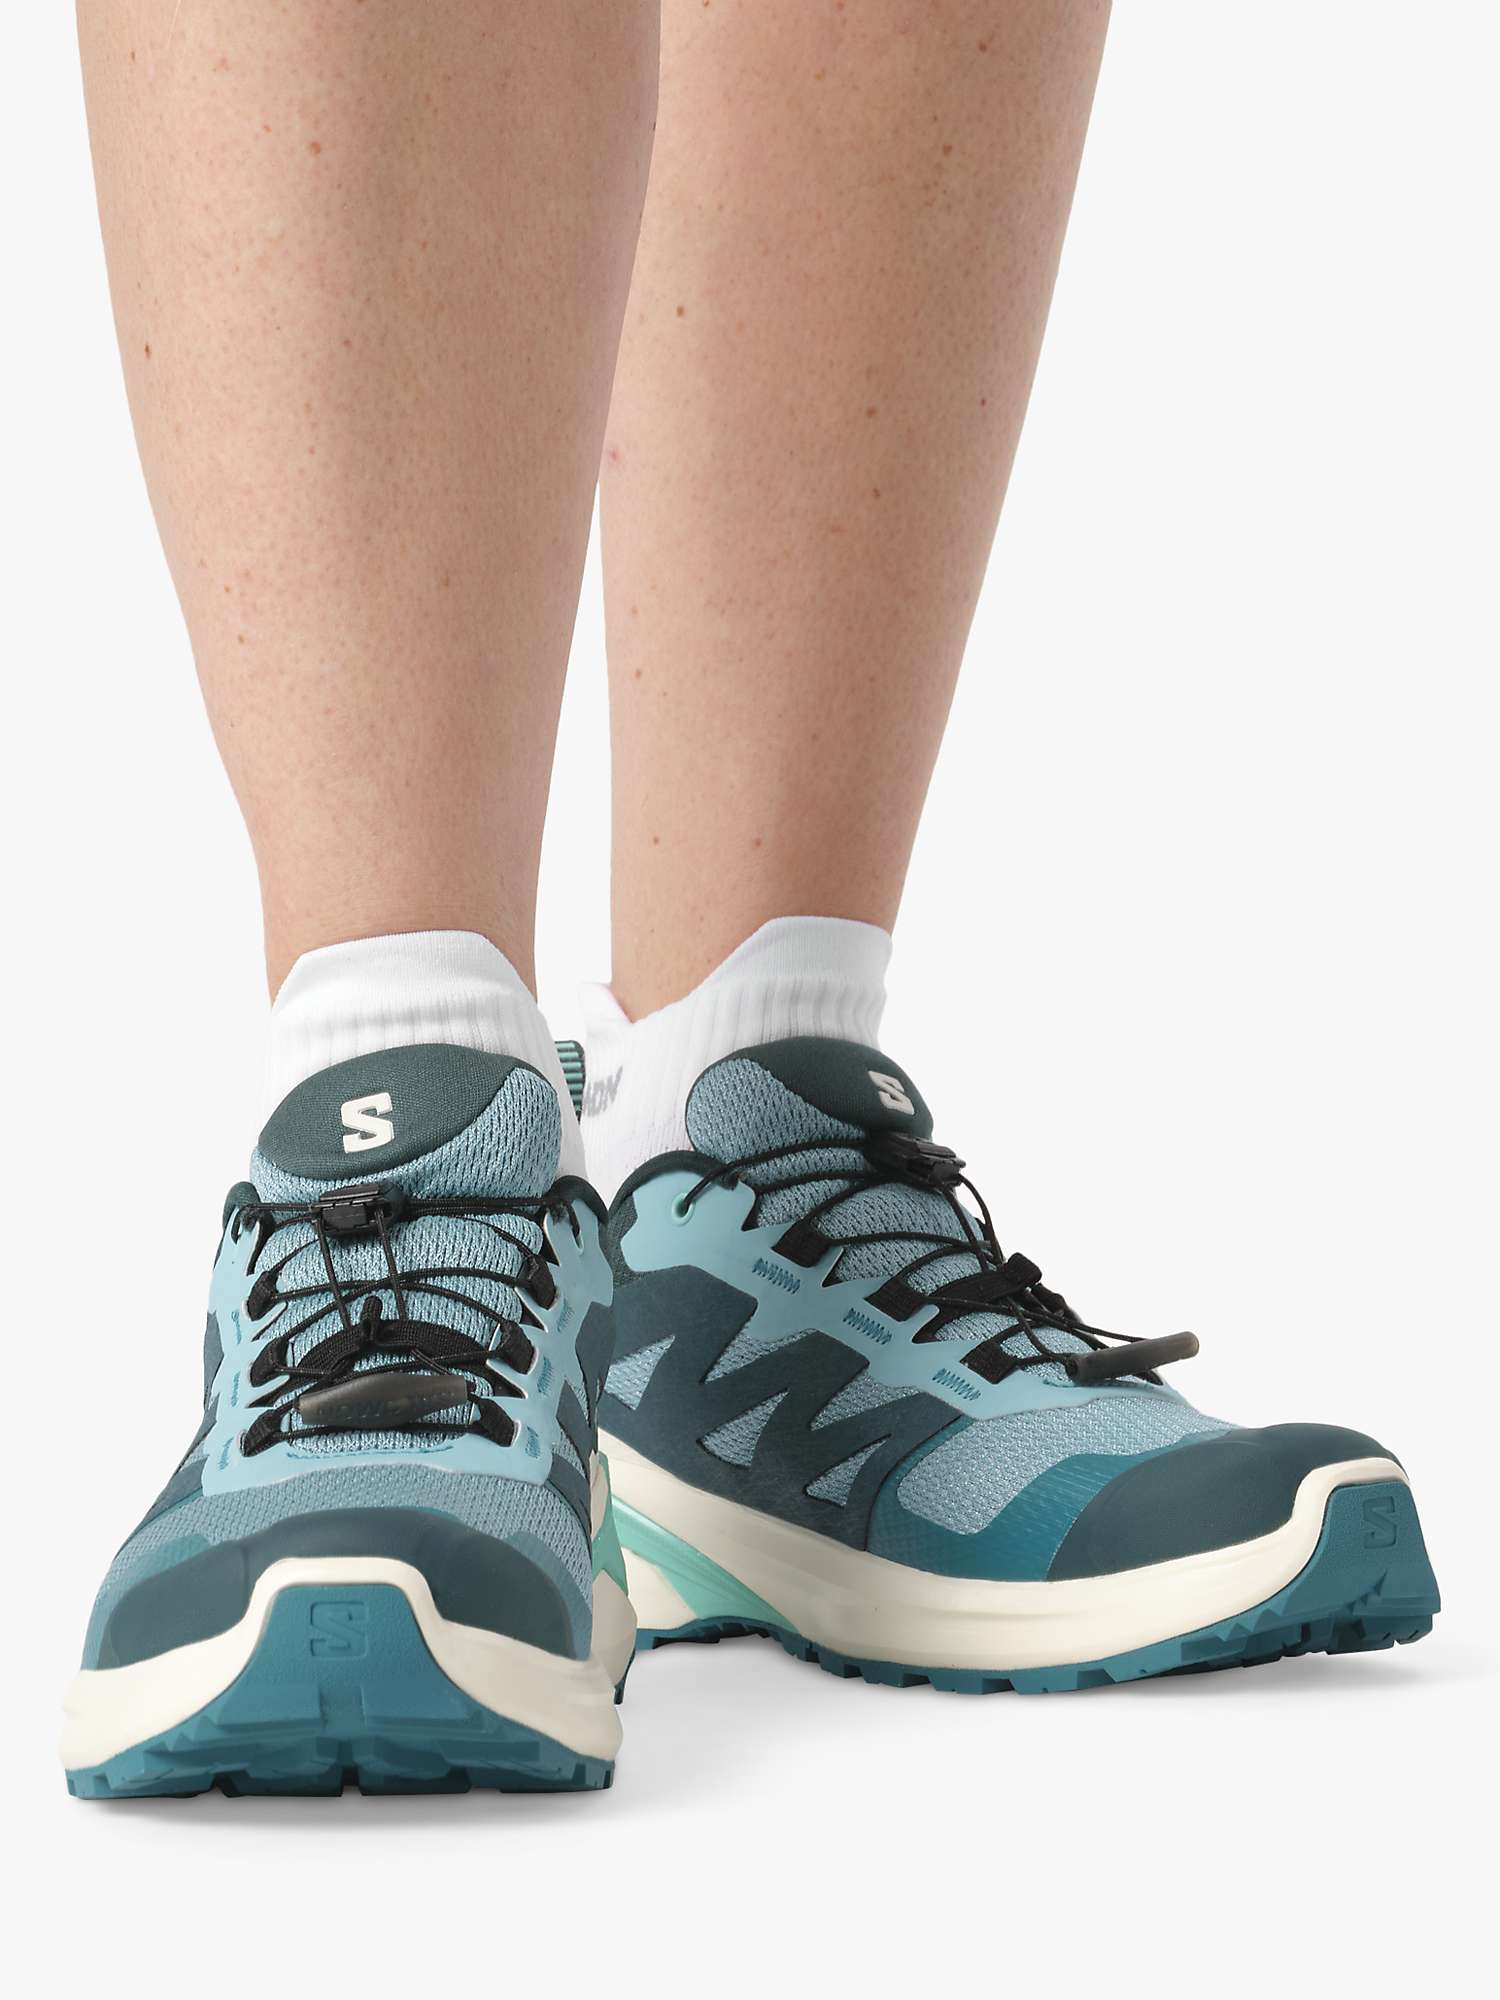 Buy Salomon X Adventure GTX Women's Waterproof Shoes, Turquoise/Vanilla Online at johnlewis.com